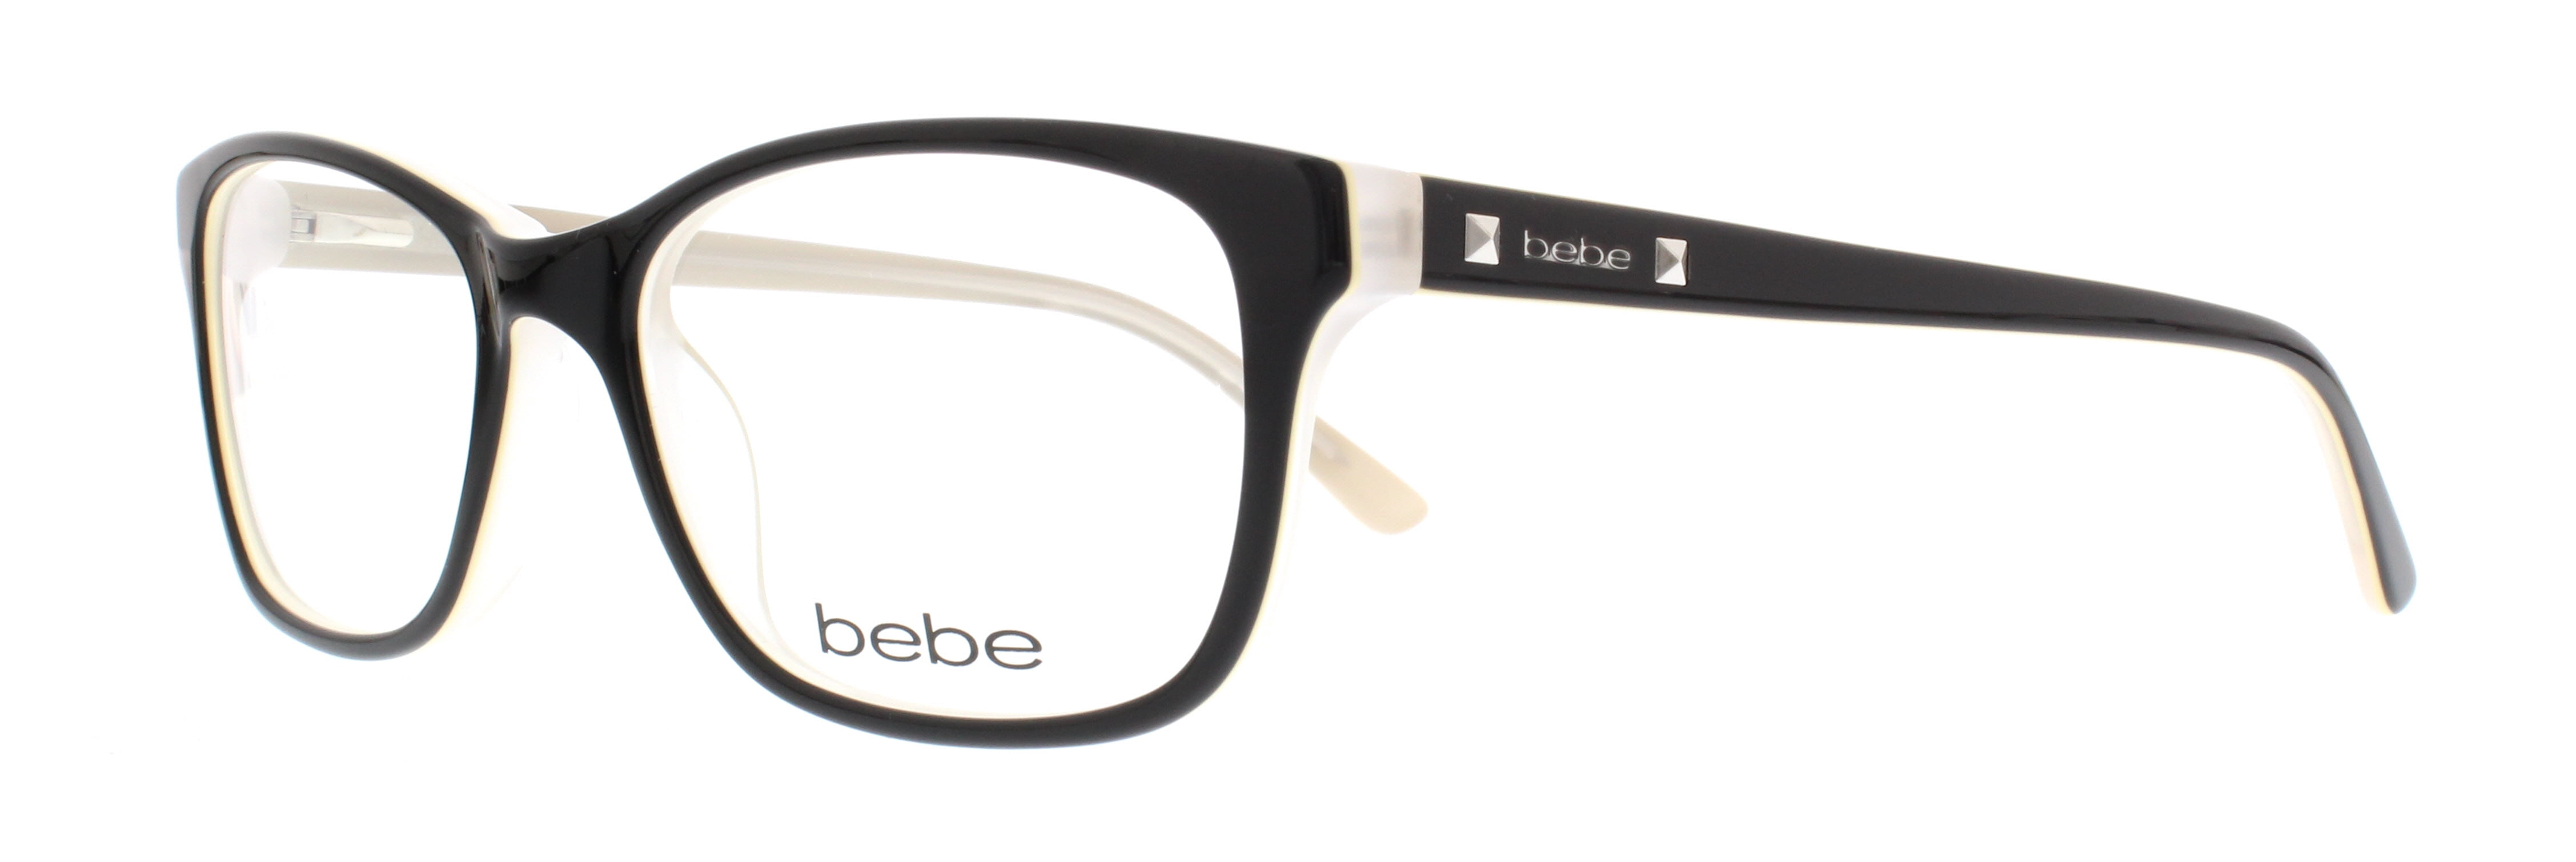 Bebe Eyeglasses Bb5075 001 Jet 52mm